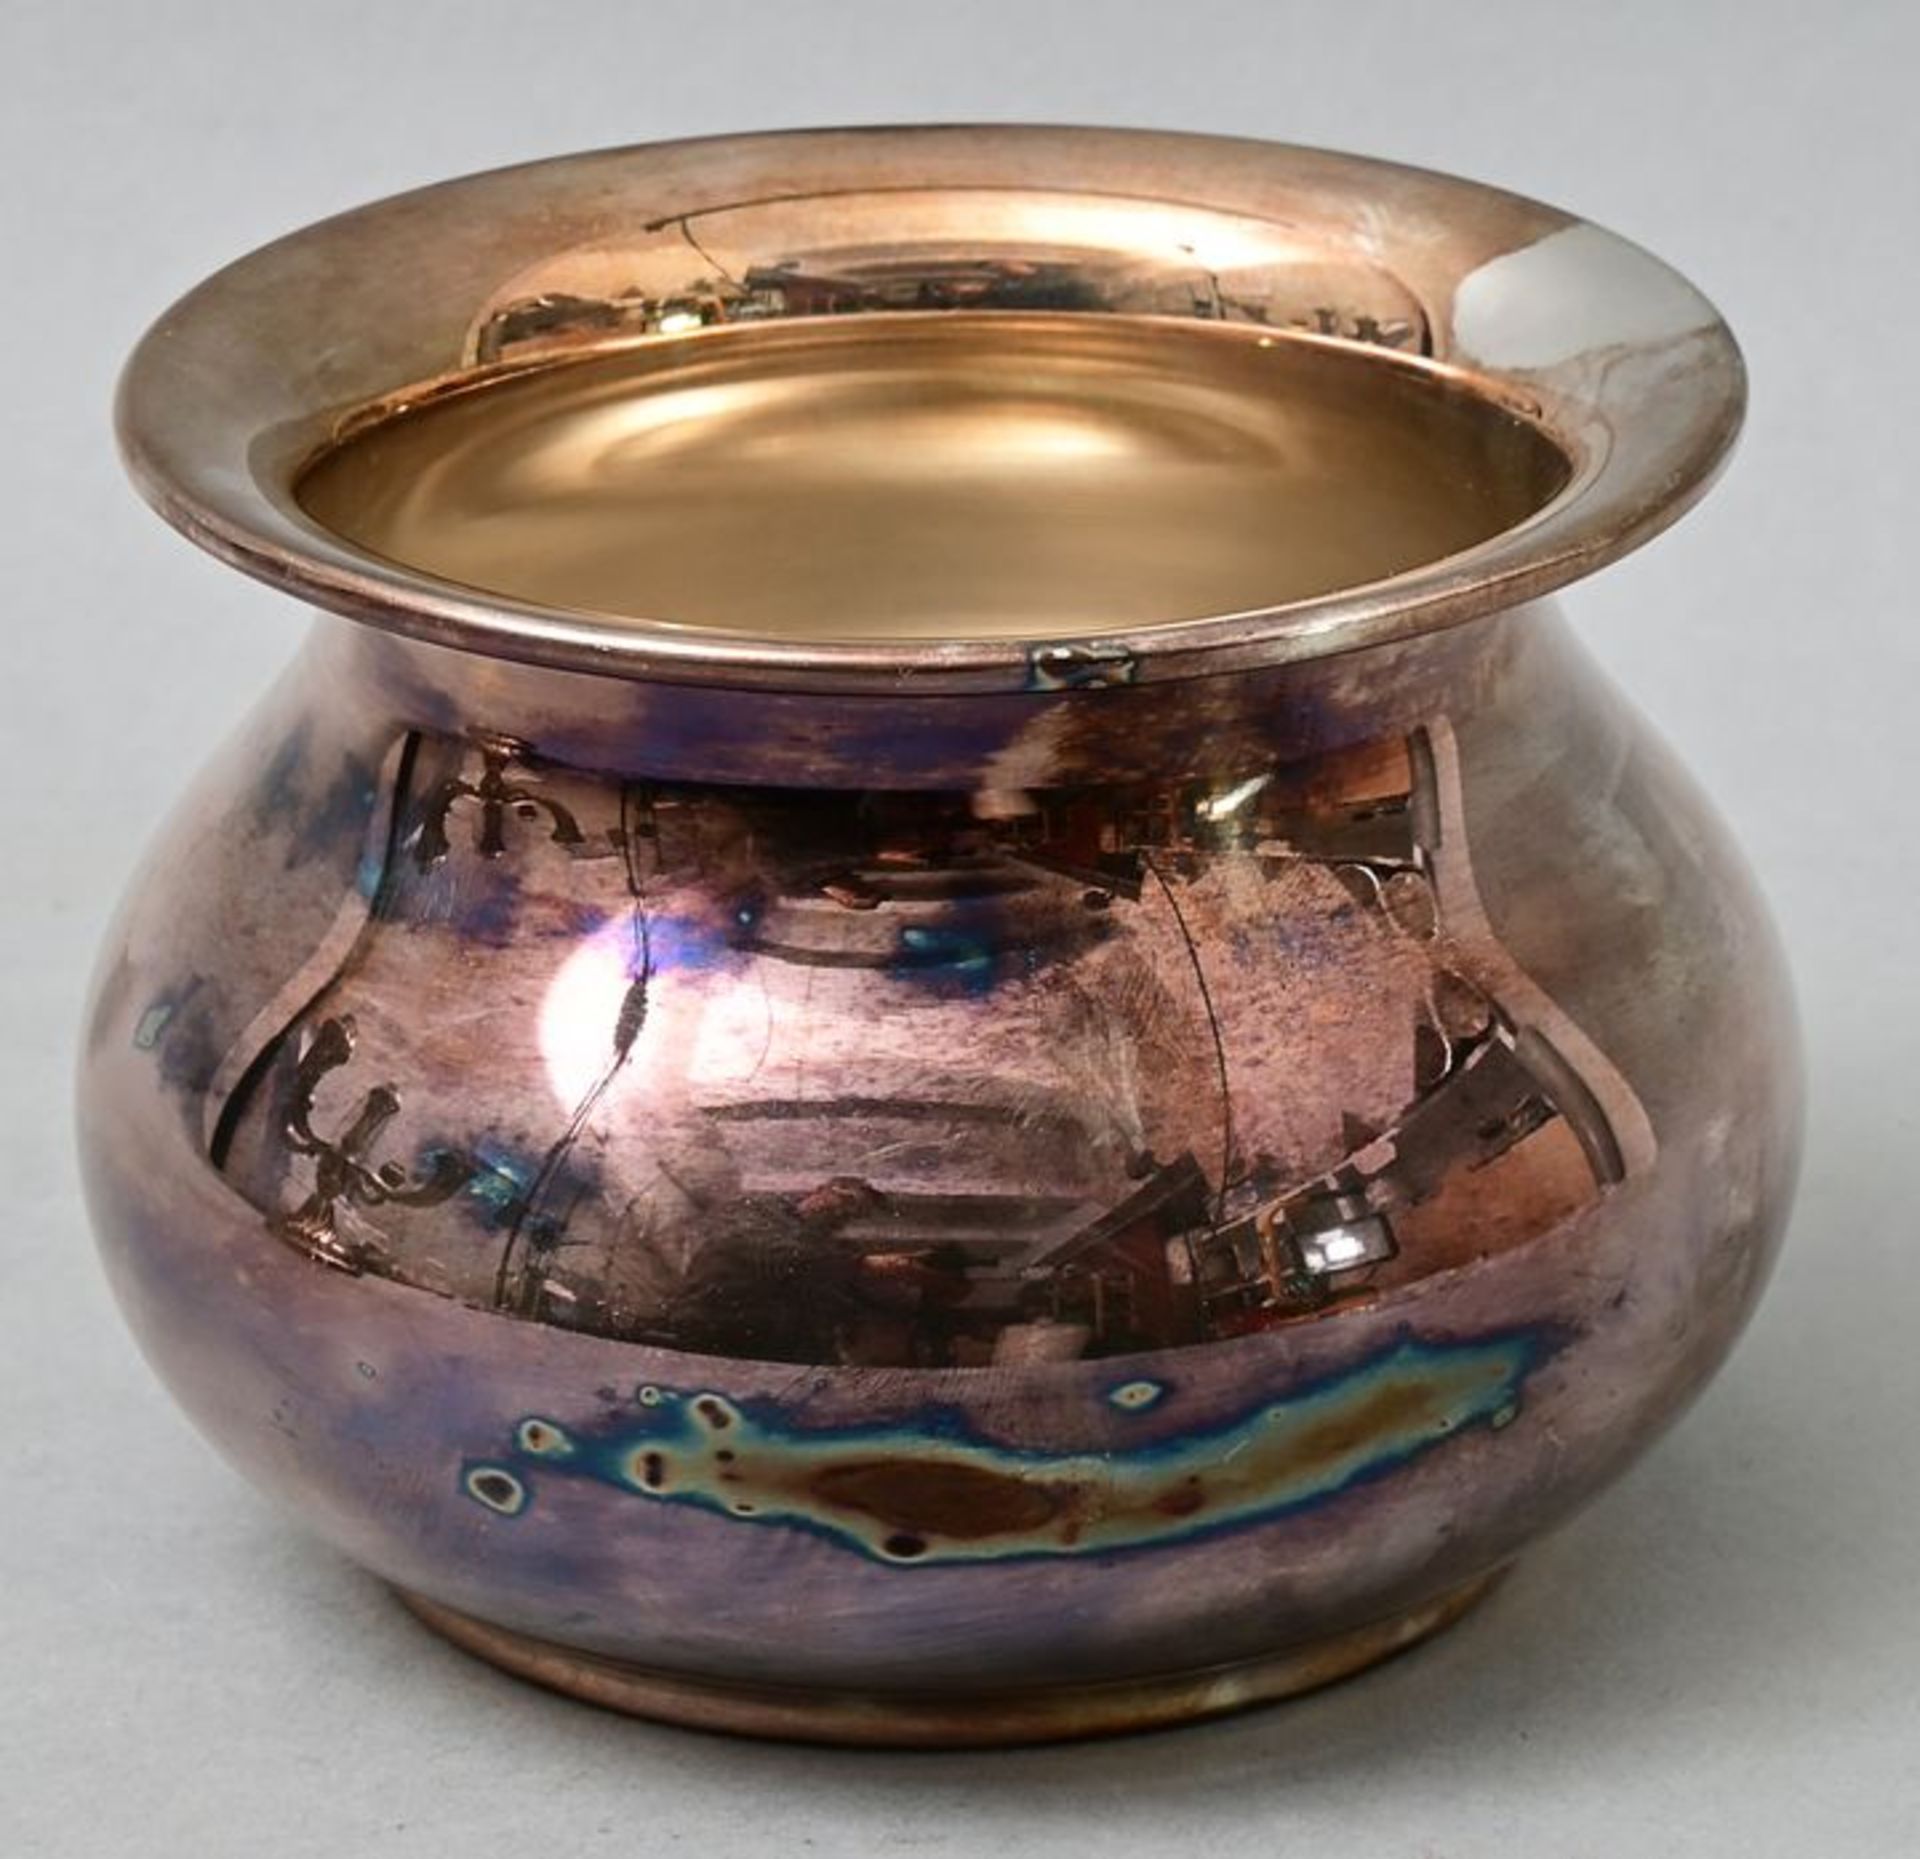 Silberschale/ silver bowl